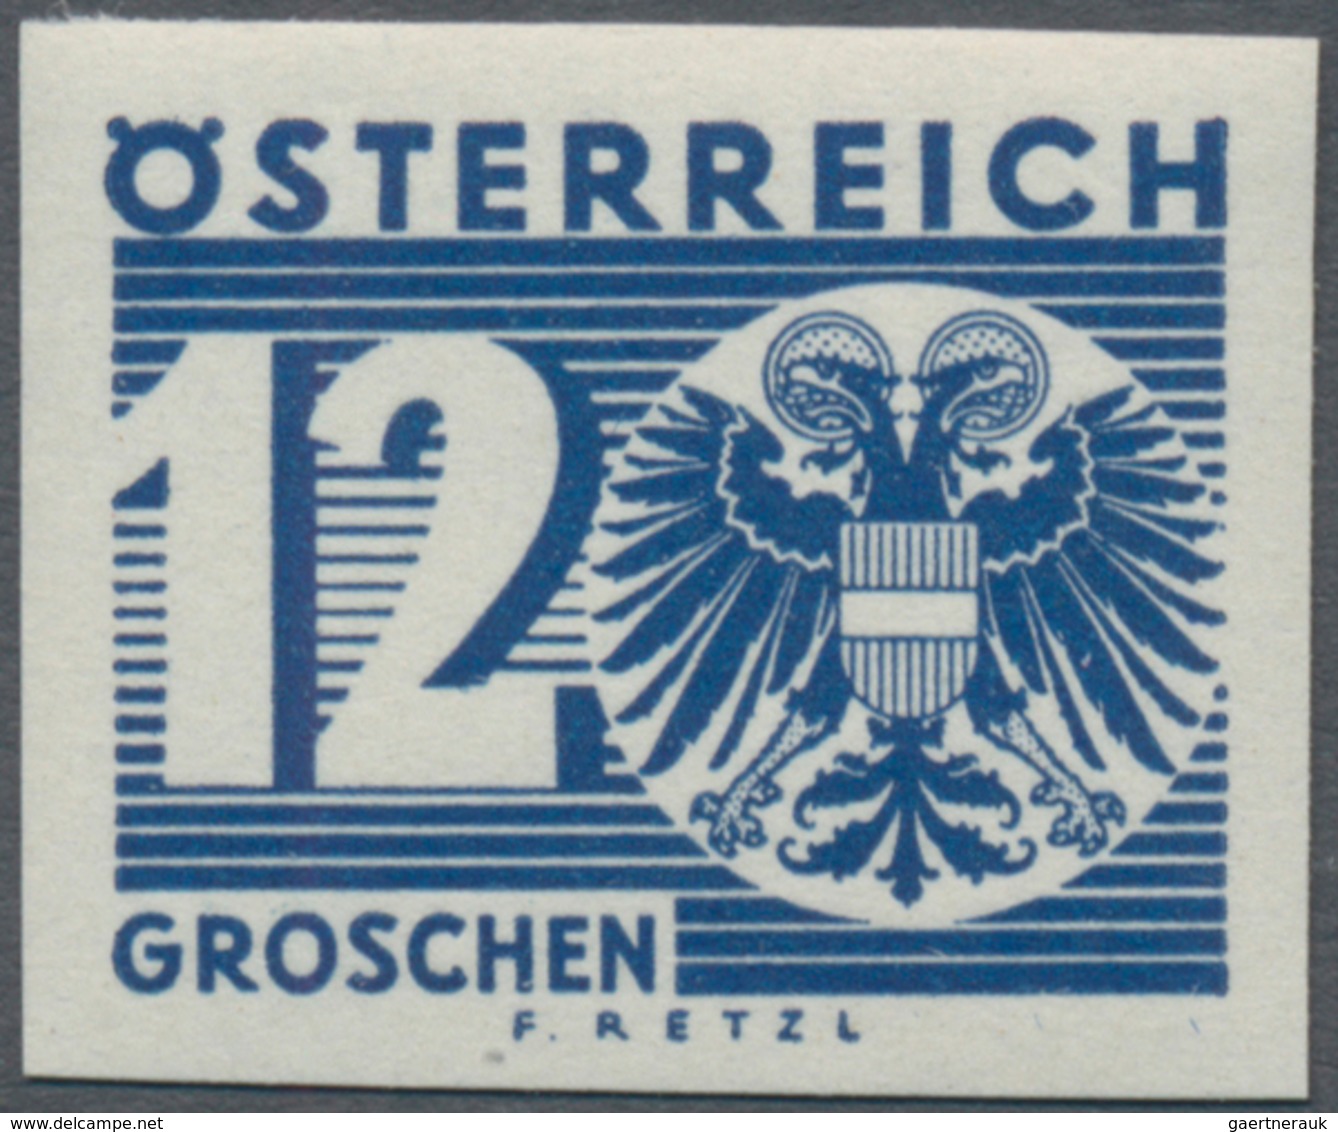 Österreich - Portomarken: 1935, Ziffern/Wappen, komplette Serie ungezähnt, postfrisch, unsigniert.